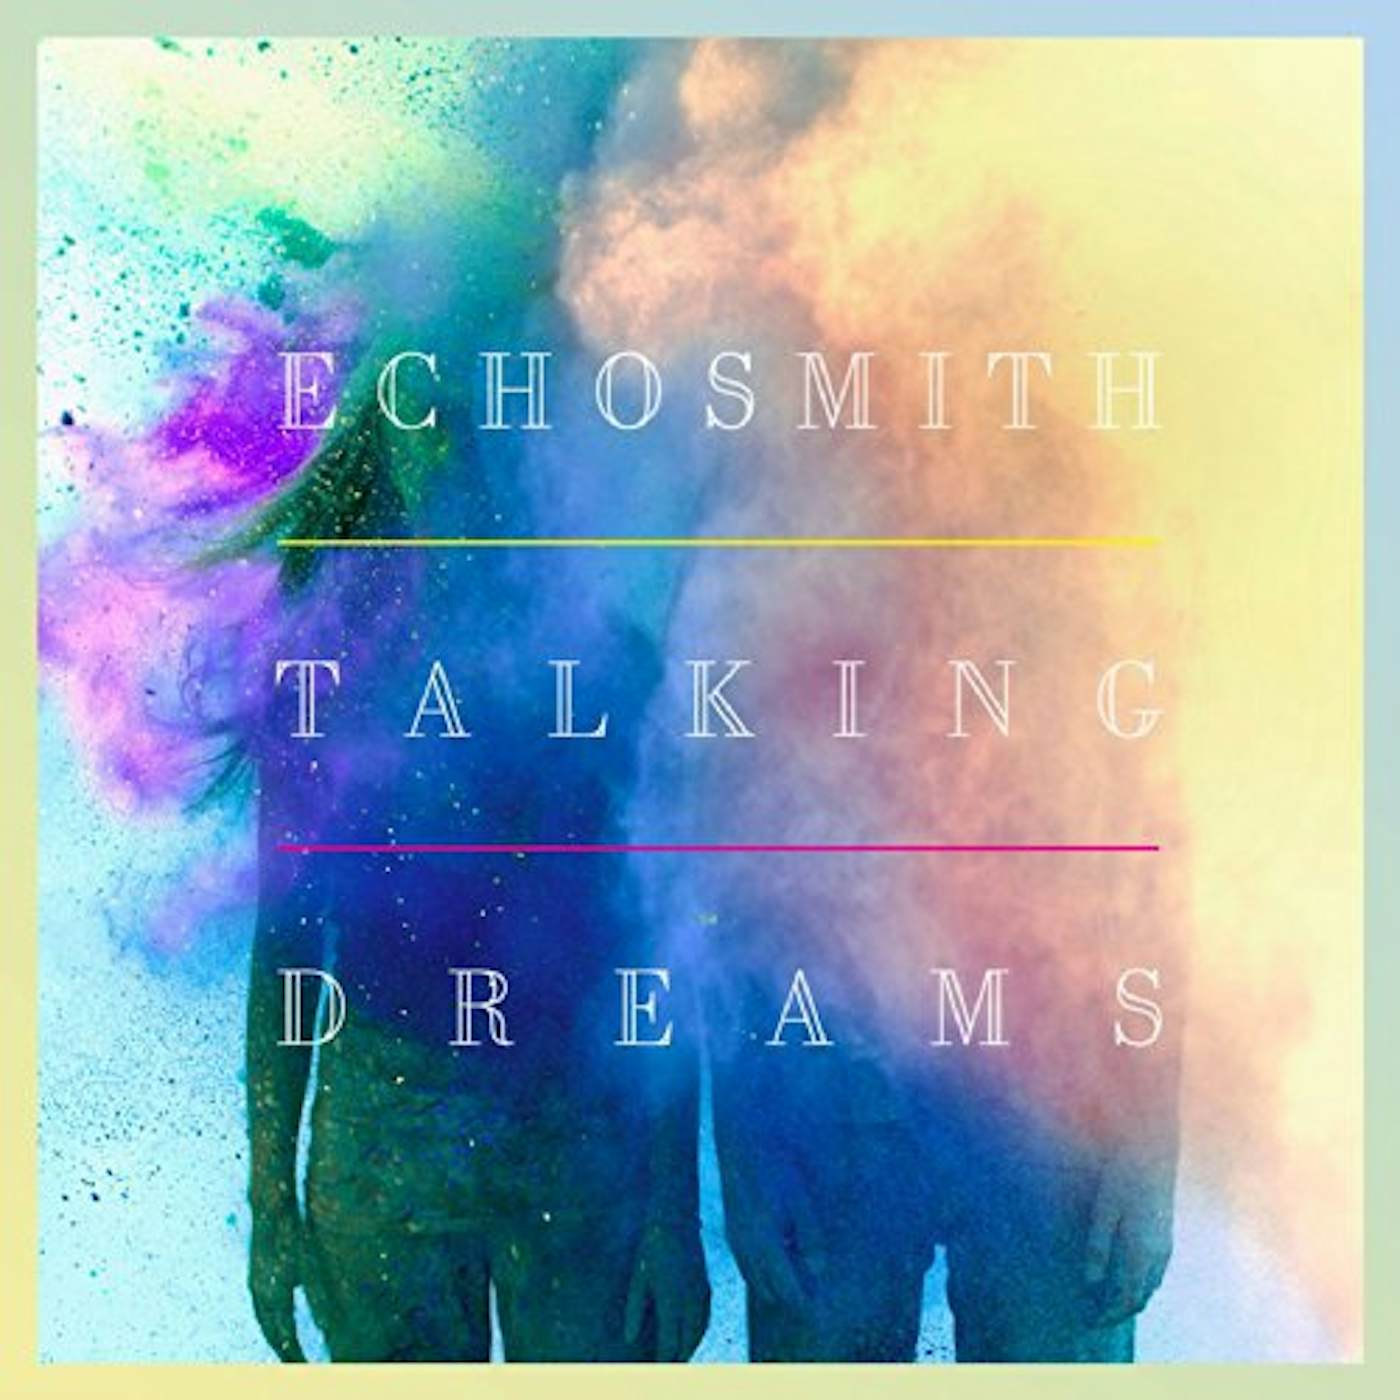 Echosmith TALKING DREAMS (Vinyl)